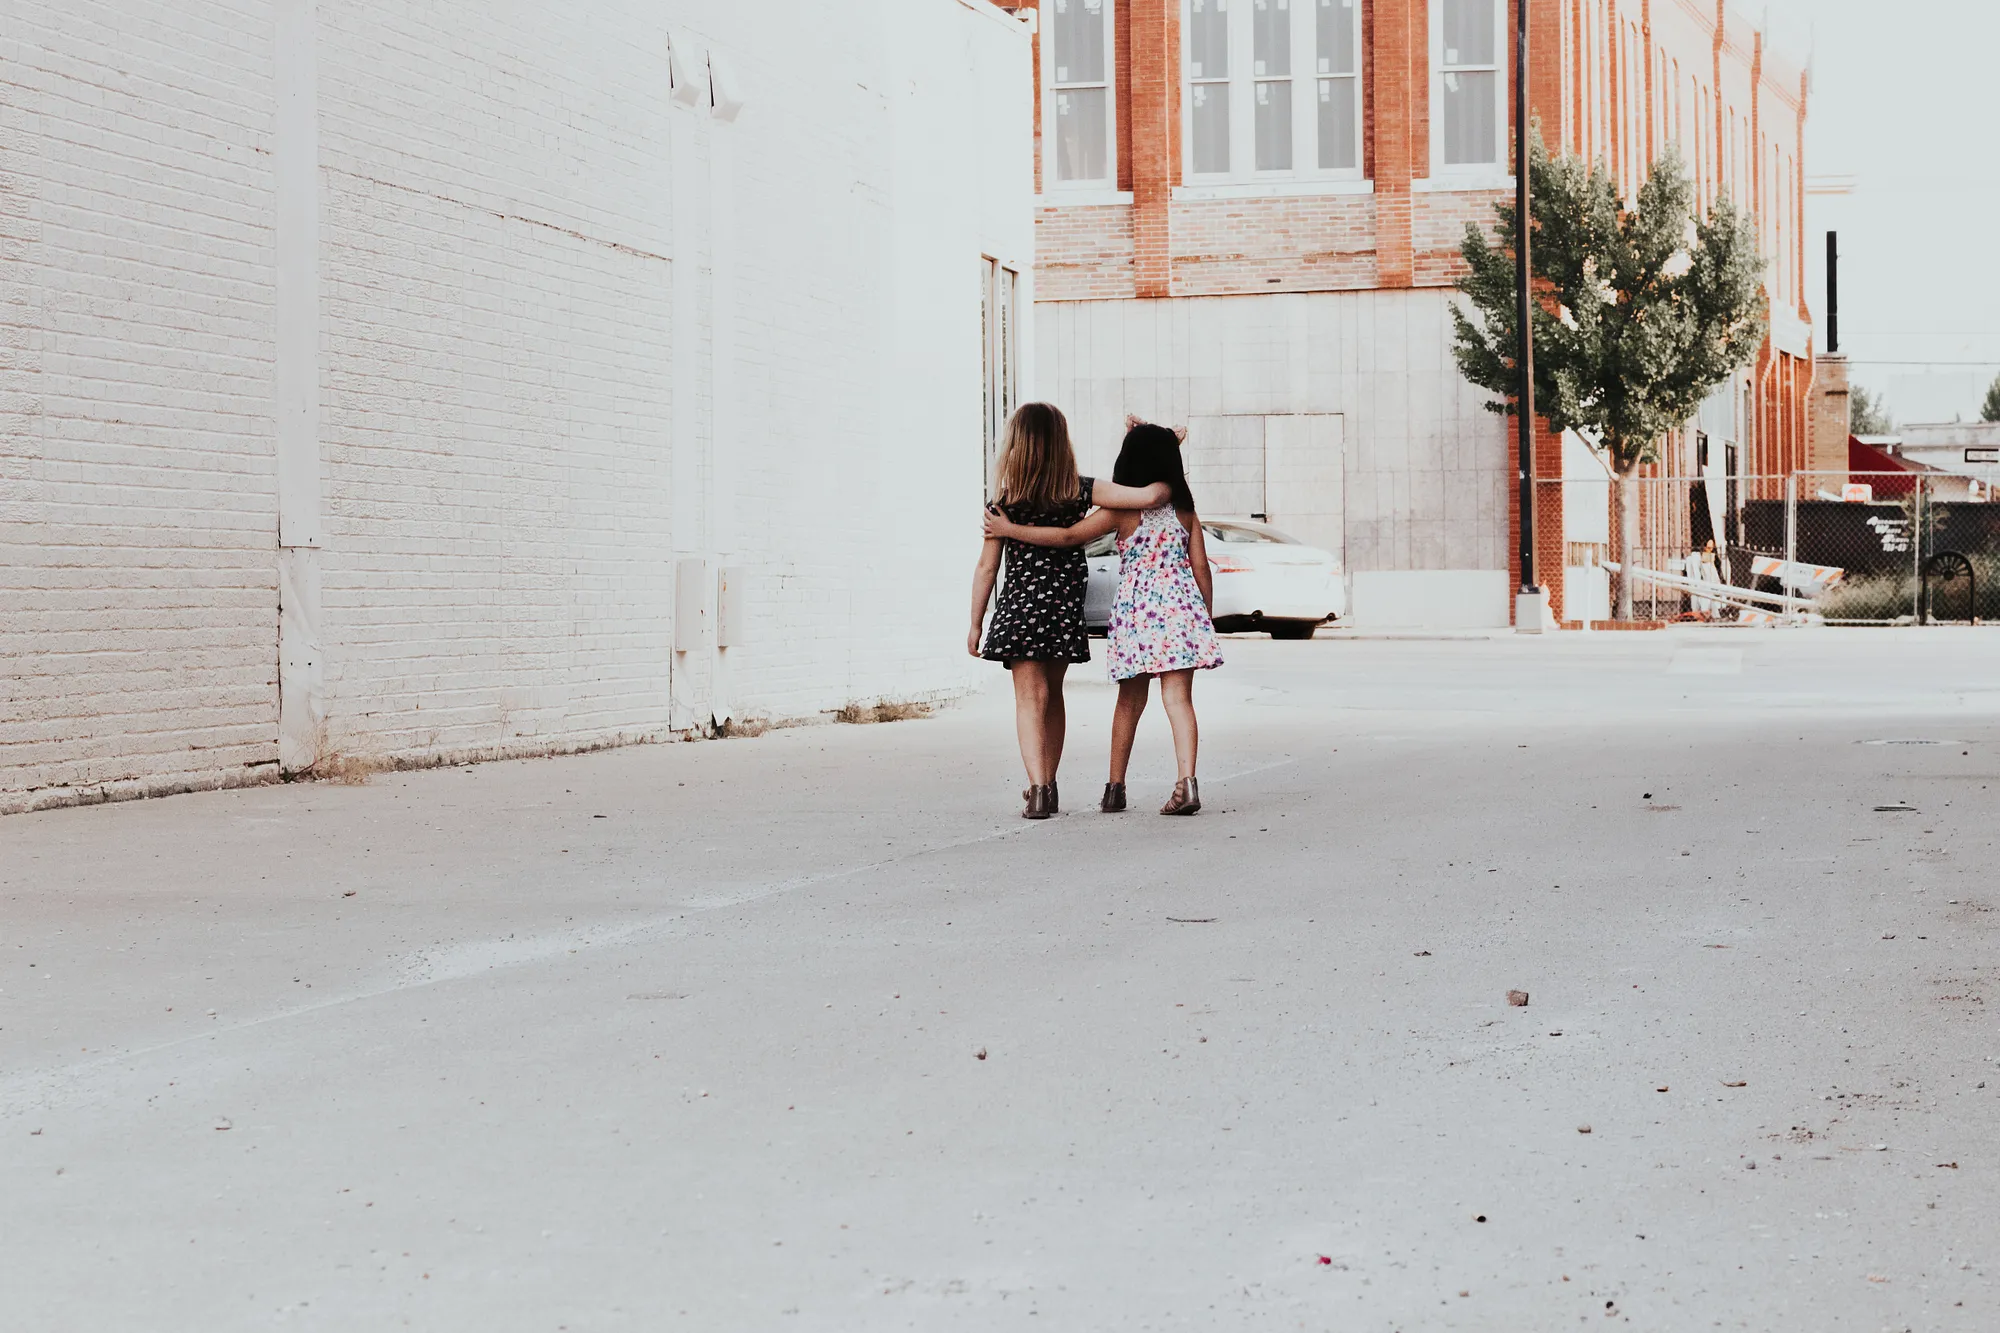 Deux fillettes se tiennent en marchant - Photo by Andrea Tummons on Unsplash